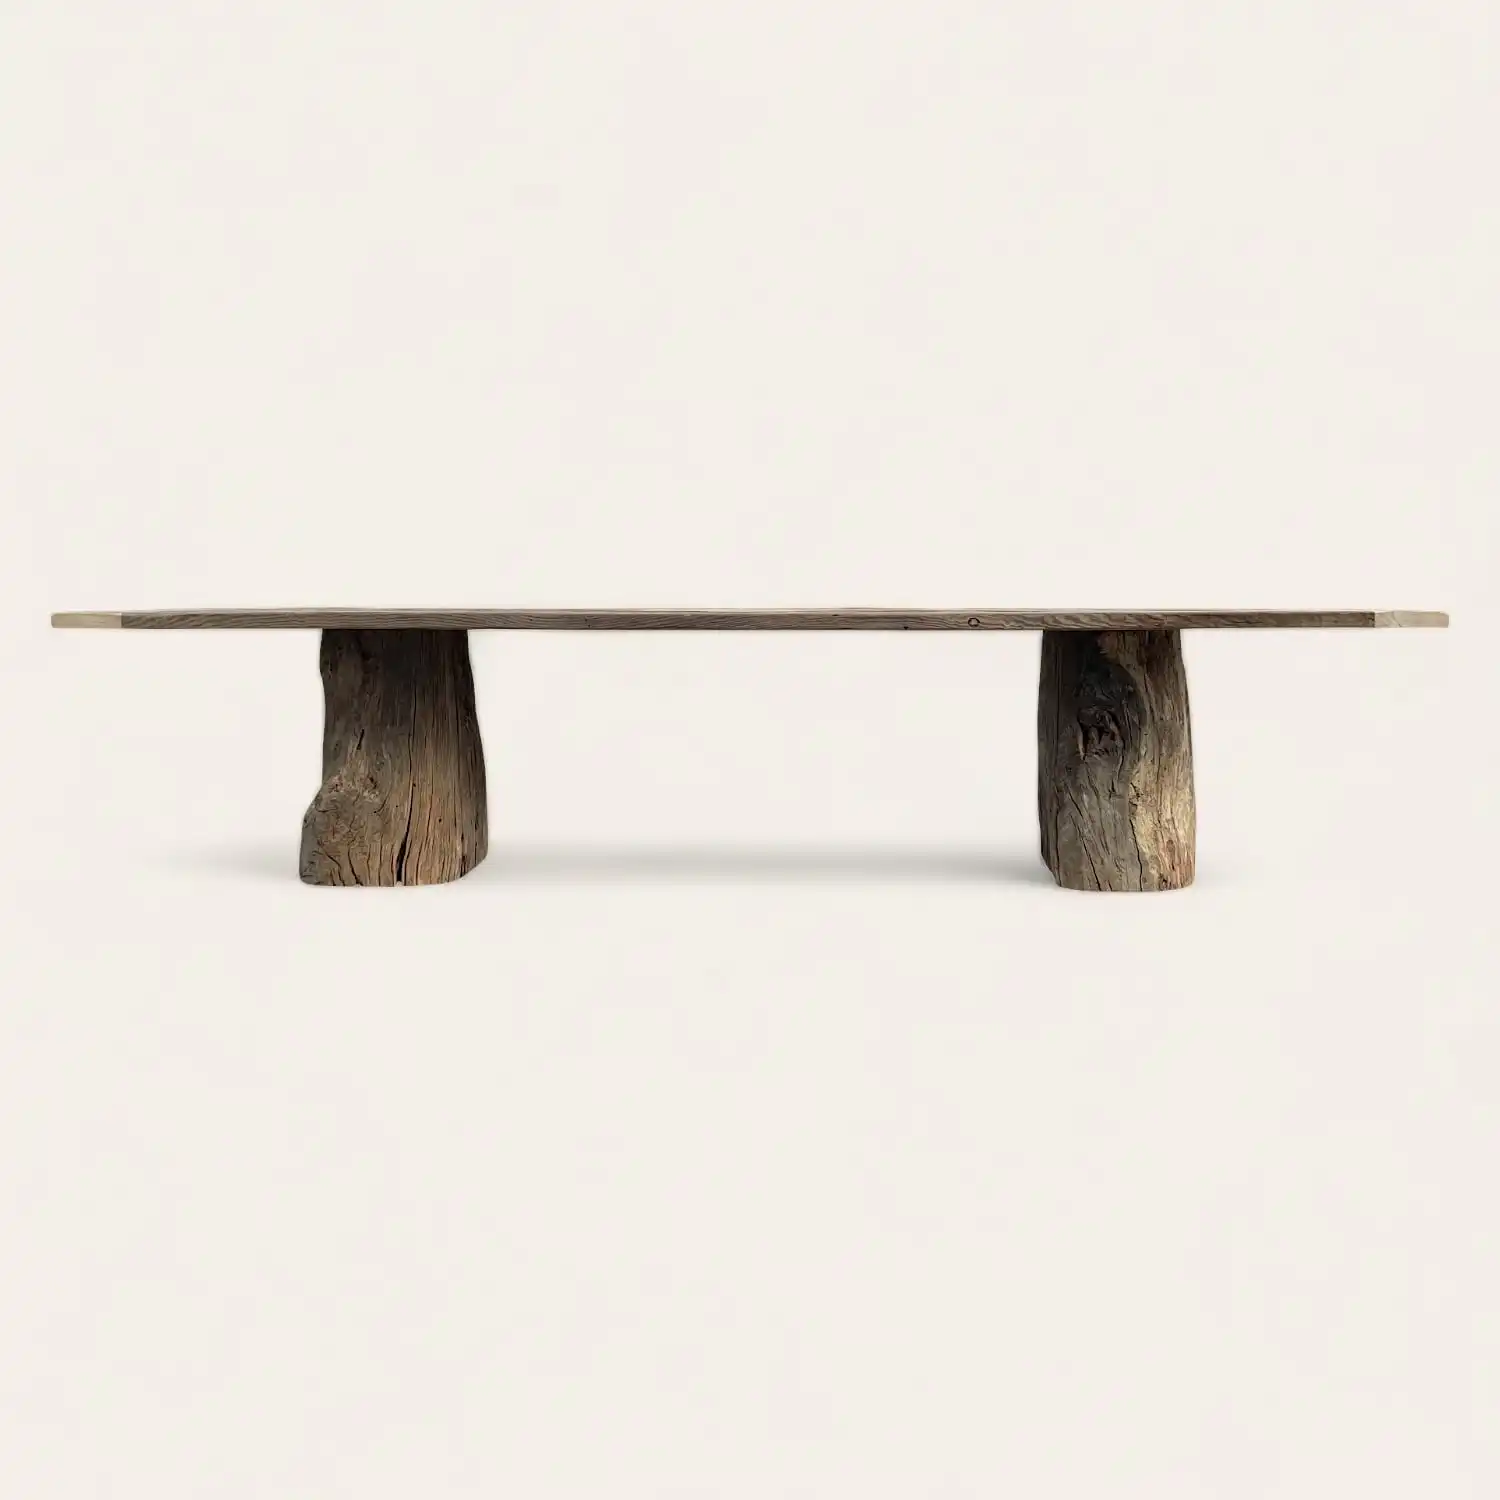  Une table de ferme en bois avec deux pieds en bois rustique sur fond blanc. 